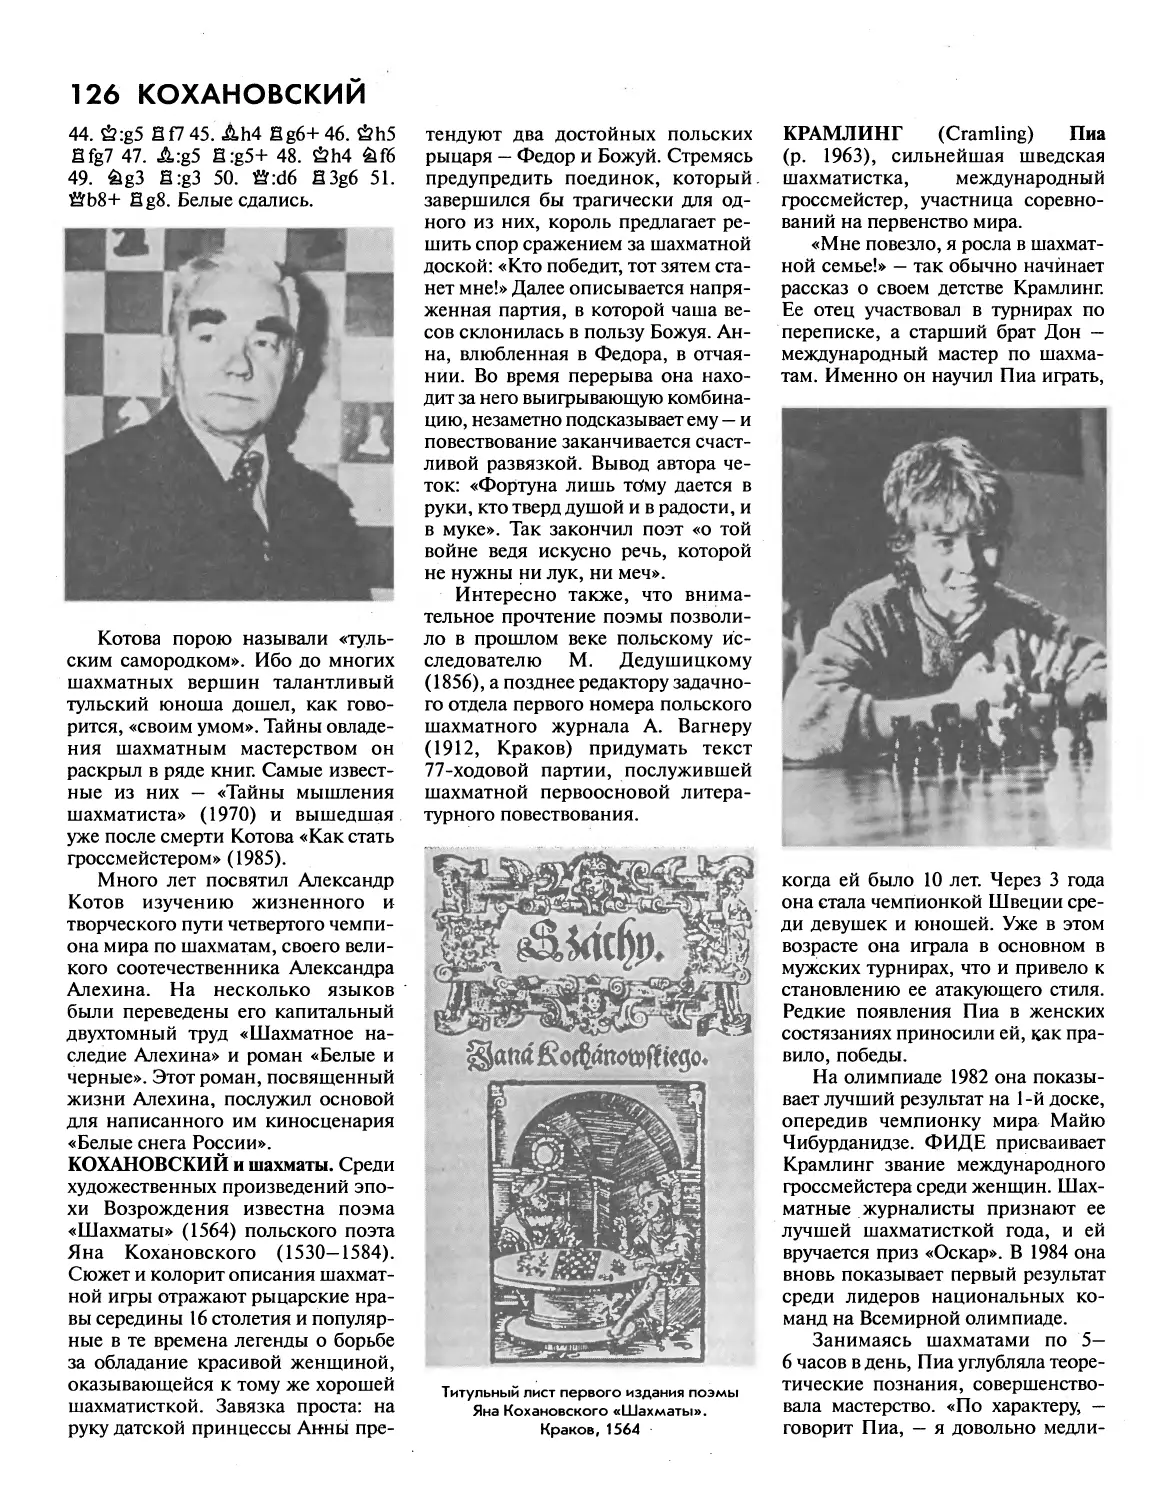 Кохановский и шахматы
Крамлинг П.